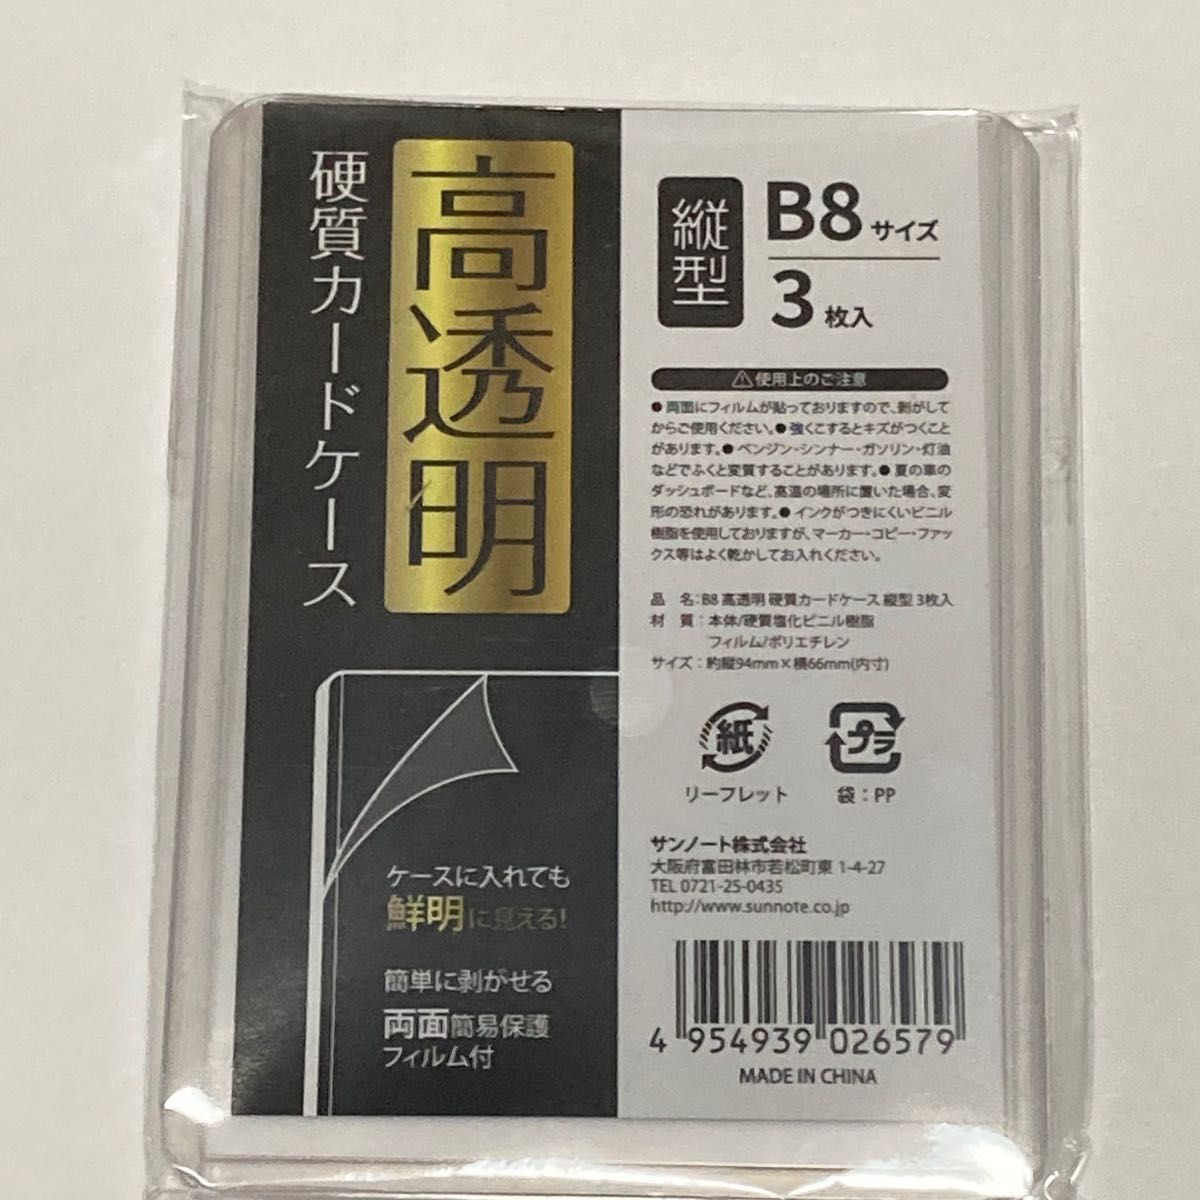 DAISO ダイソー 硬質カードケース B8 HARD 3枚入り 10個セット 安心の